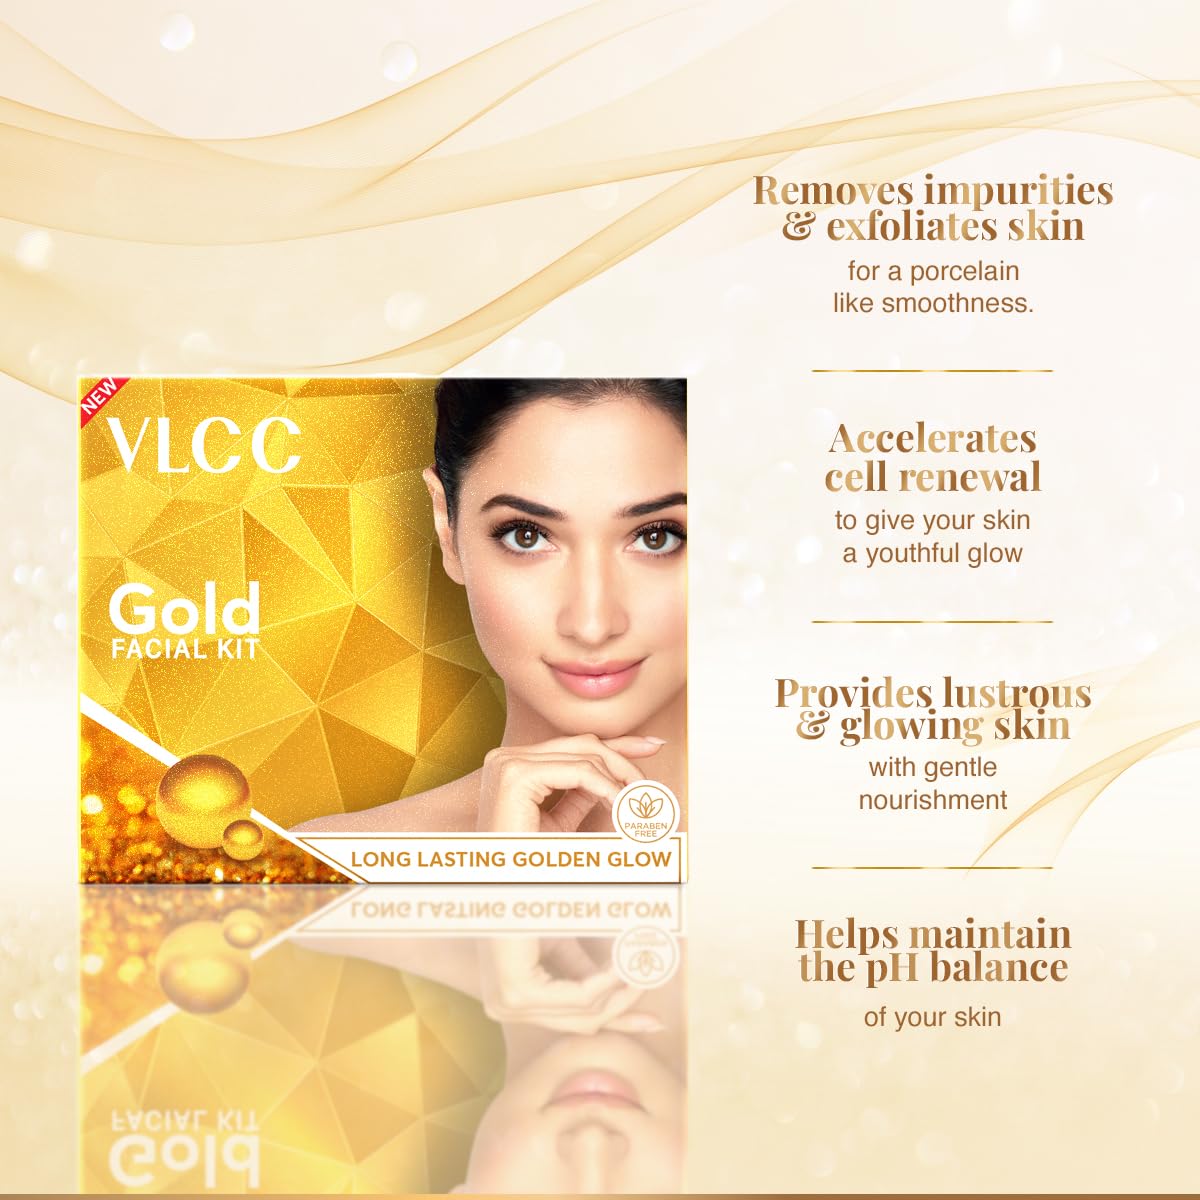 VLCC Natural Sciences Gold Facial Kit - image 3 of 6